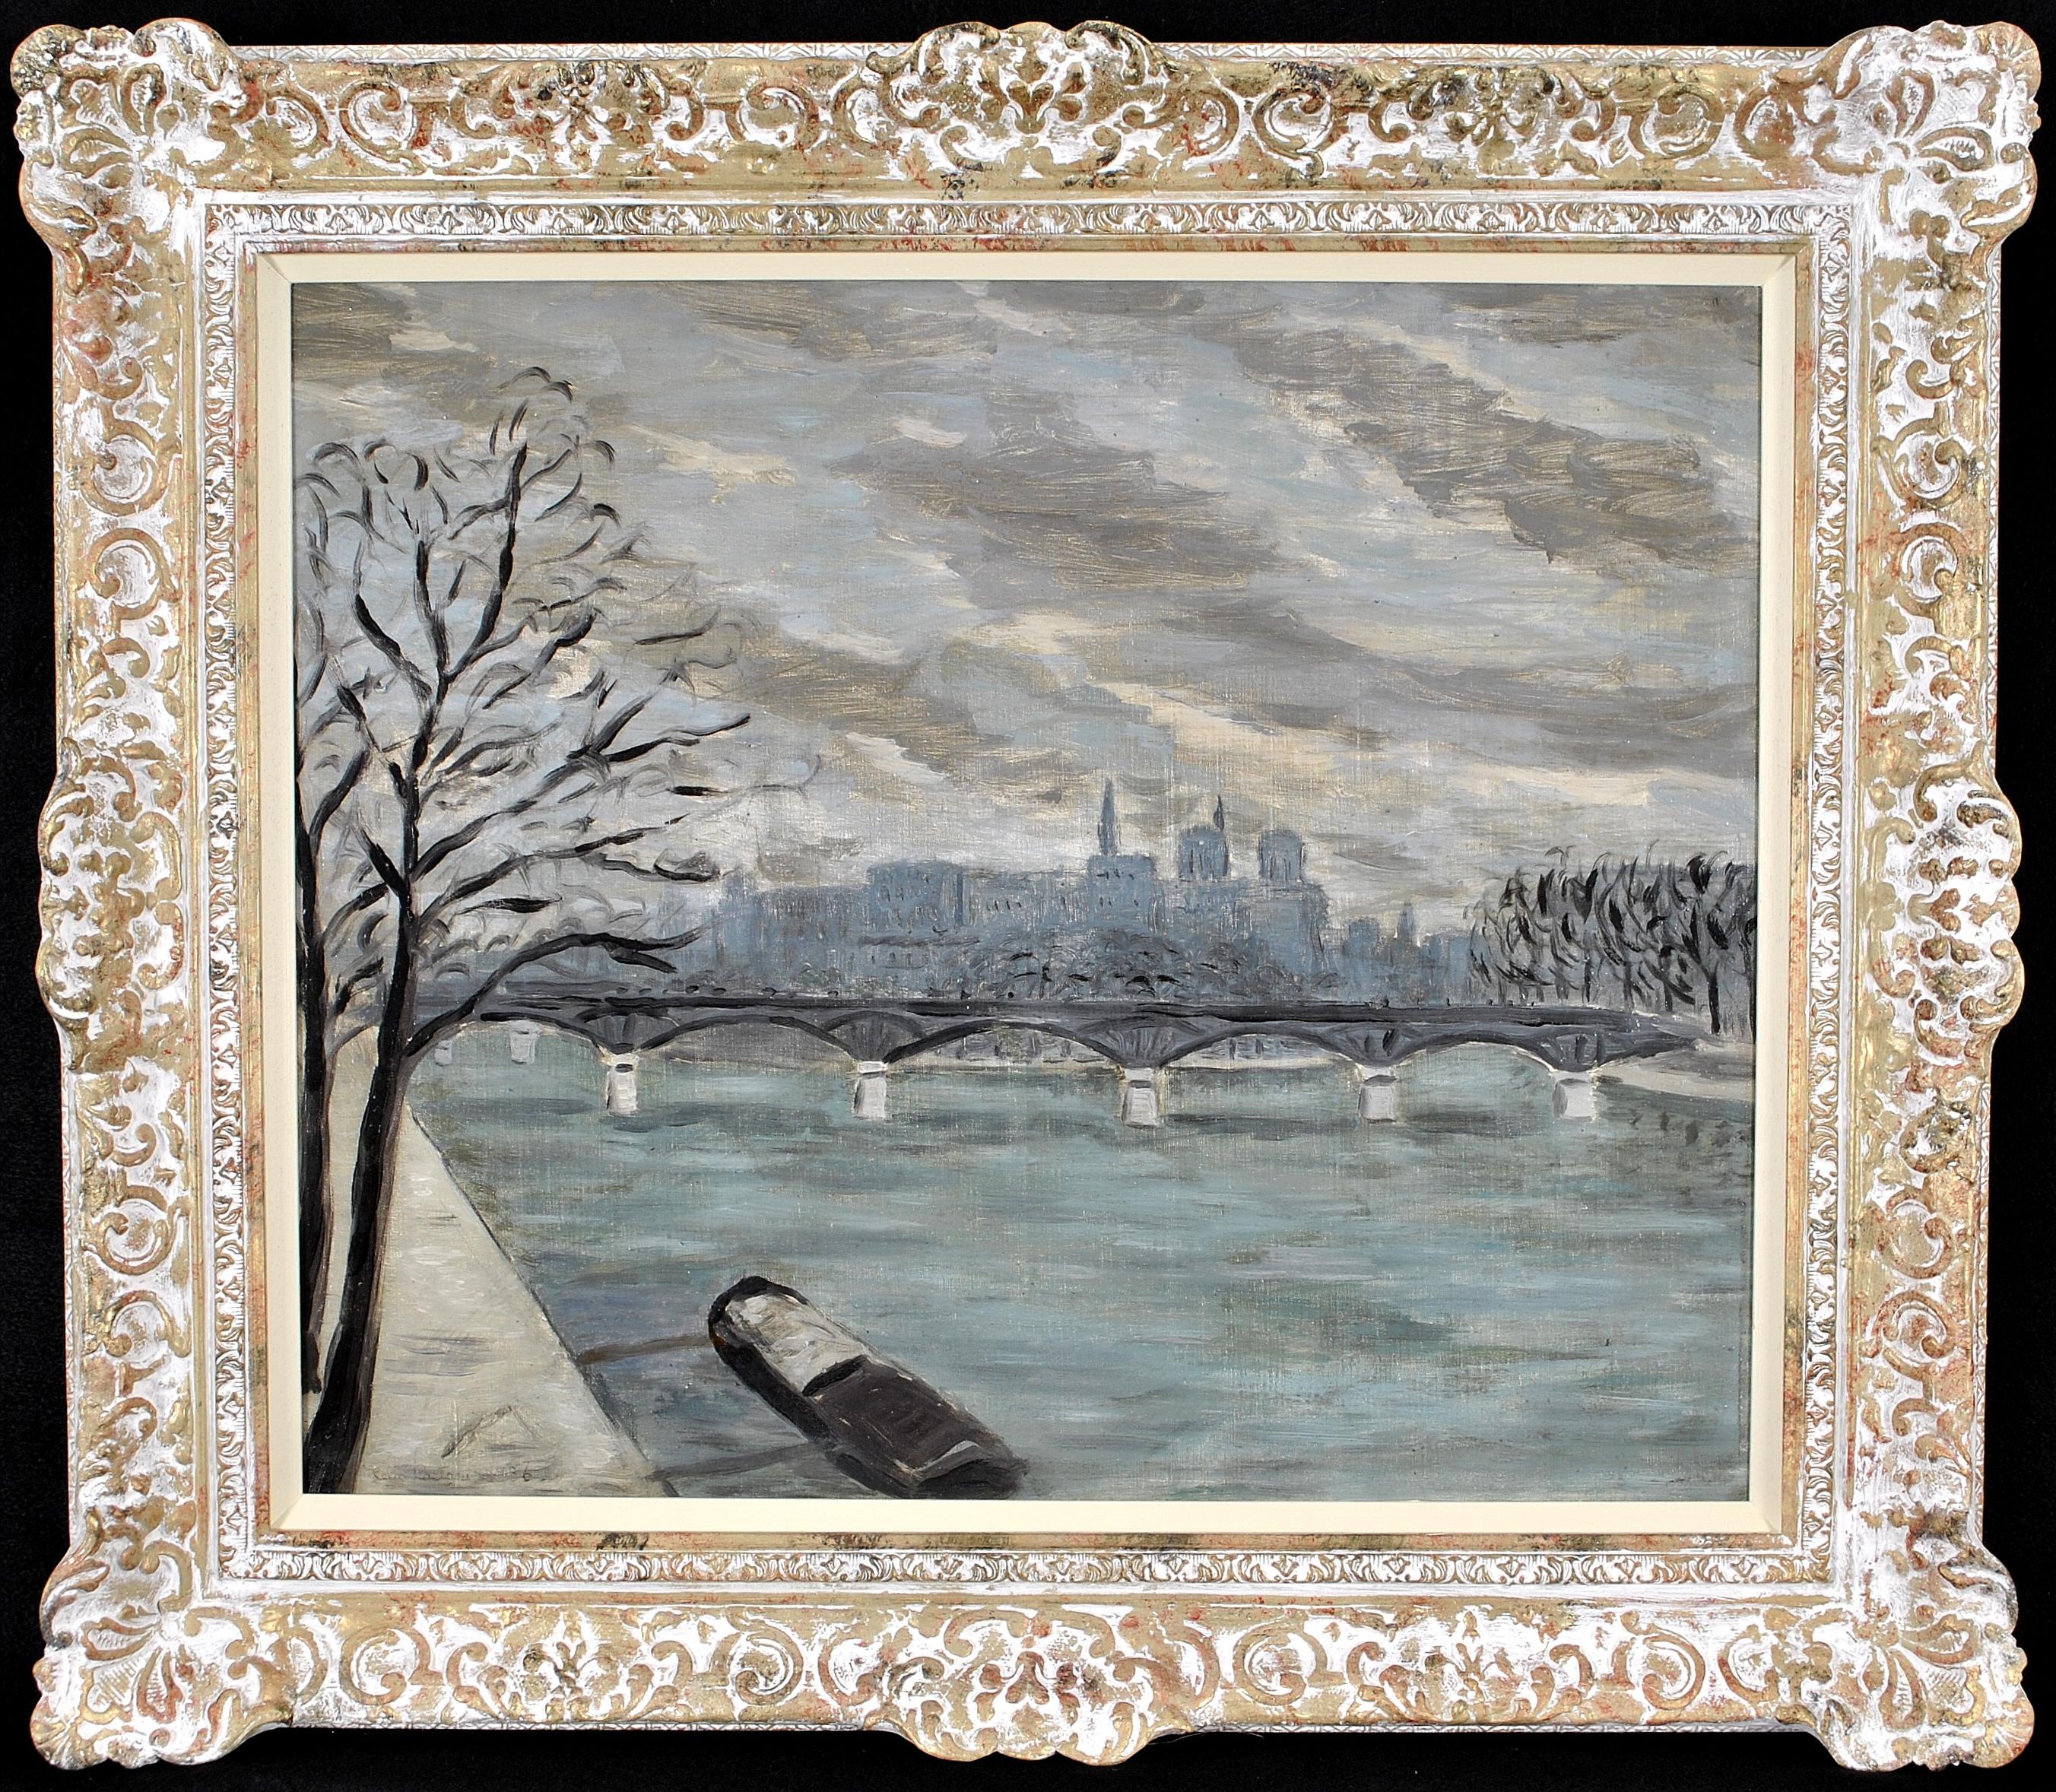 Lelia Caetani Landscape Painting - La Seine - 1930's French Impressionist Oil on Canvas Paris River City Painting